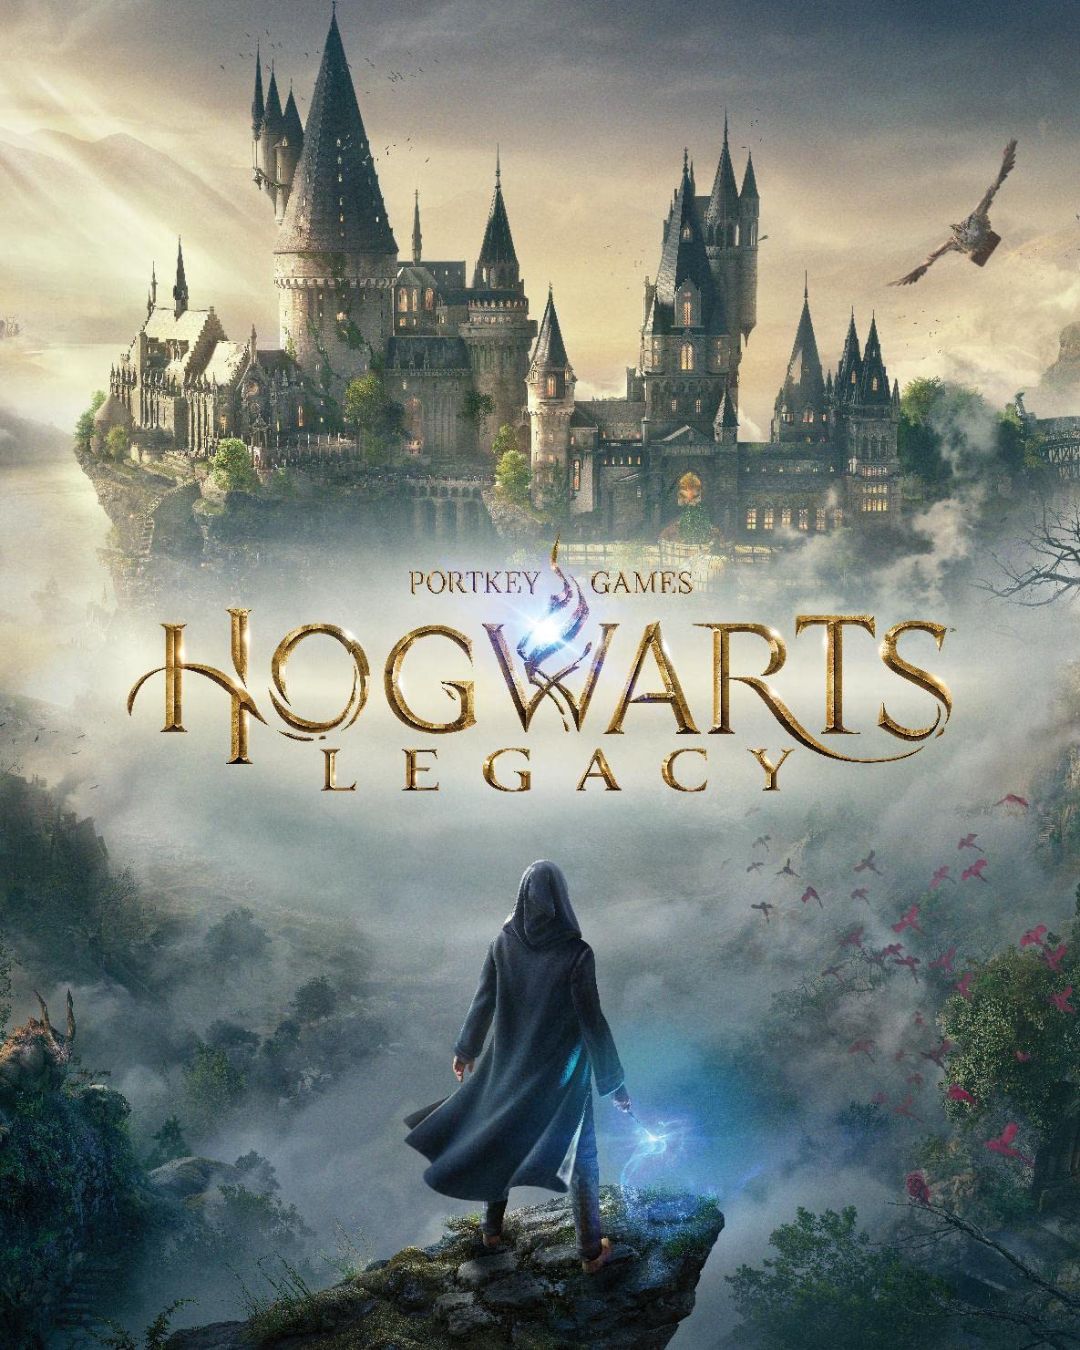 Jogo Hogwarts Legacy Deluxe Pc Steam Lançamento História no Shoptime